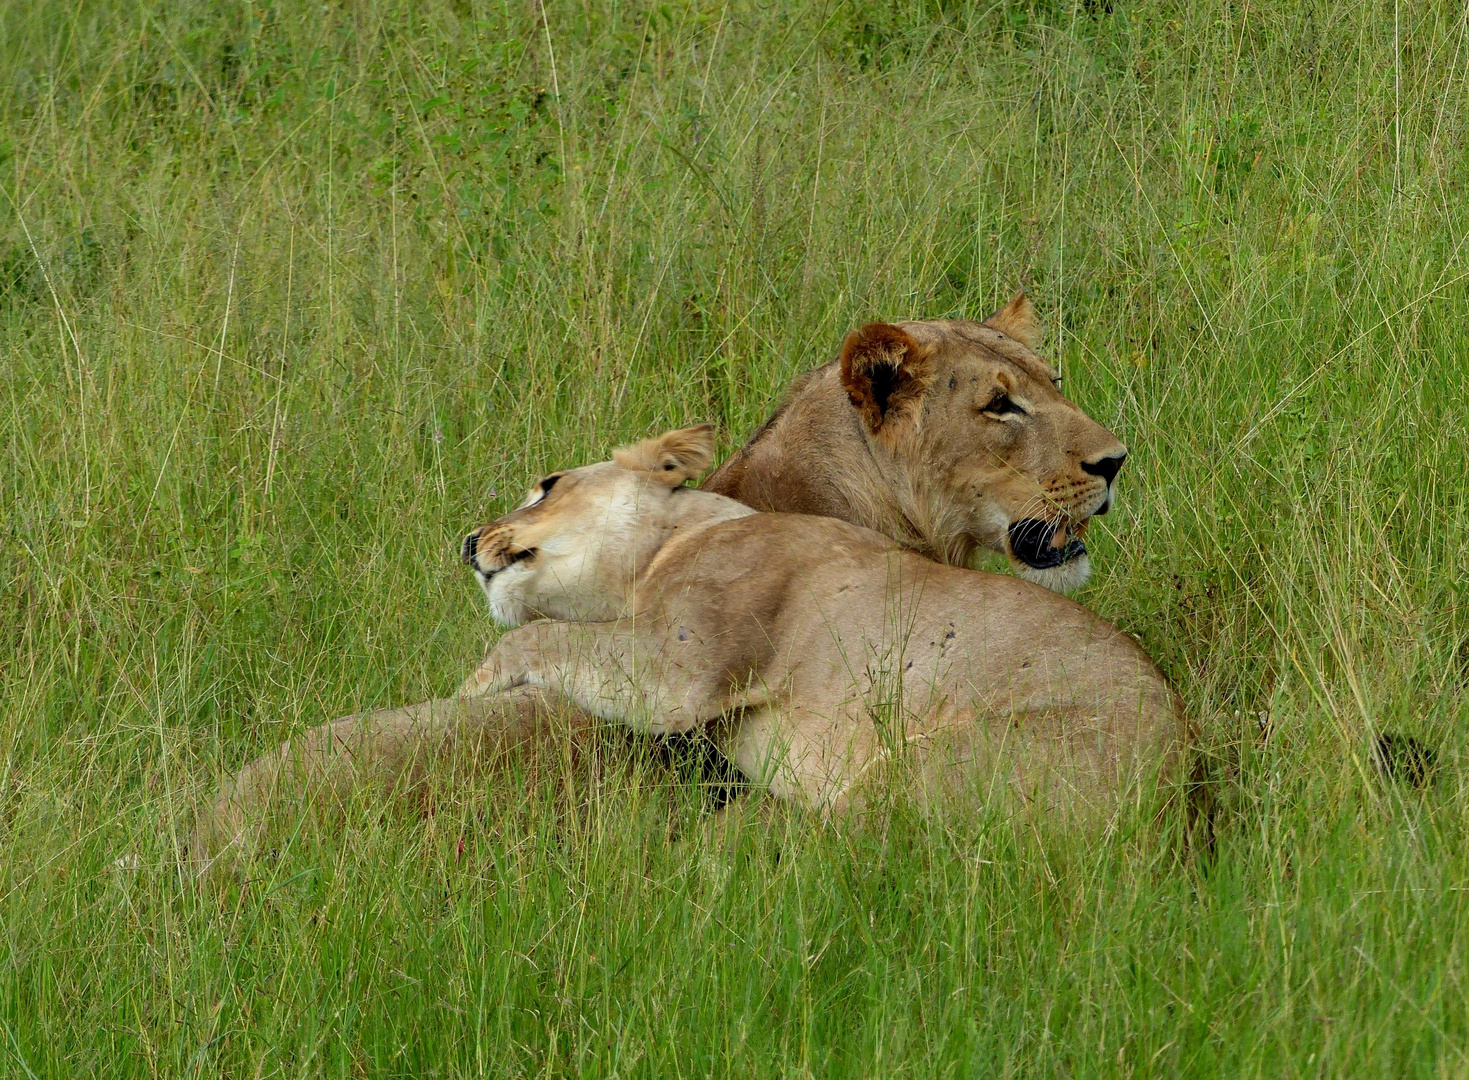 Wildlife: Kuscheltiere. Chobe NP, Botswana 2018